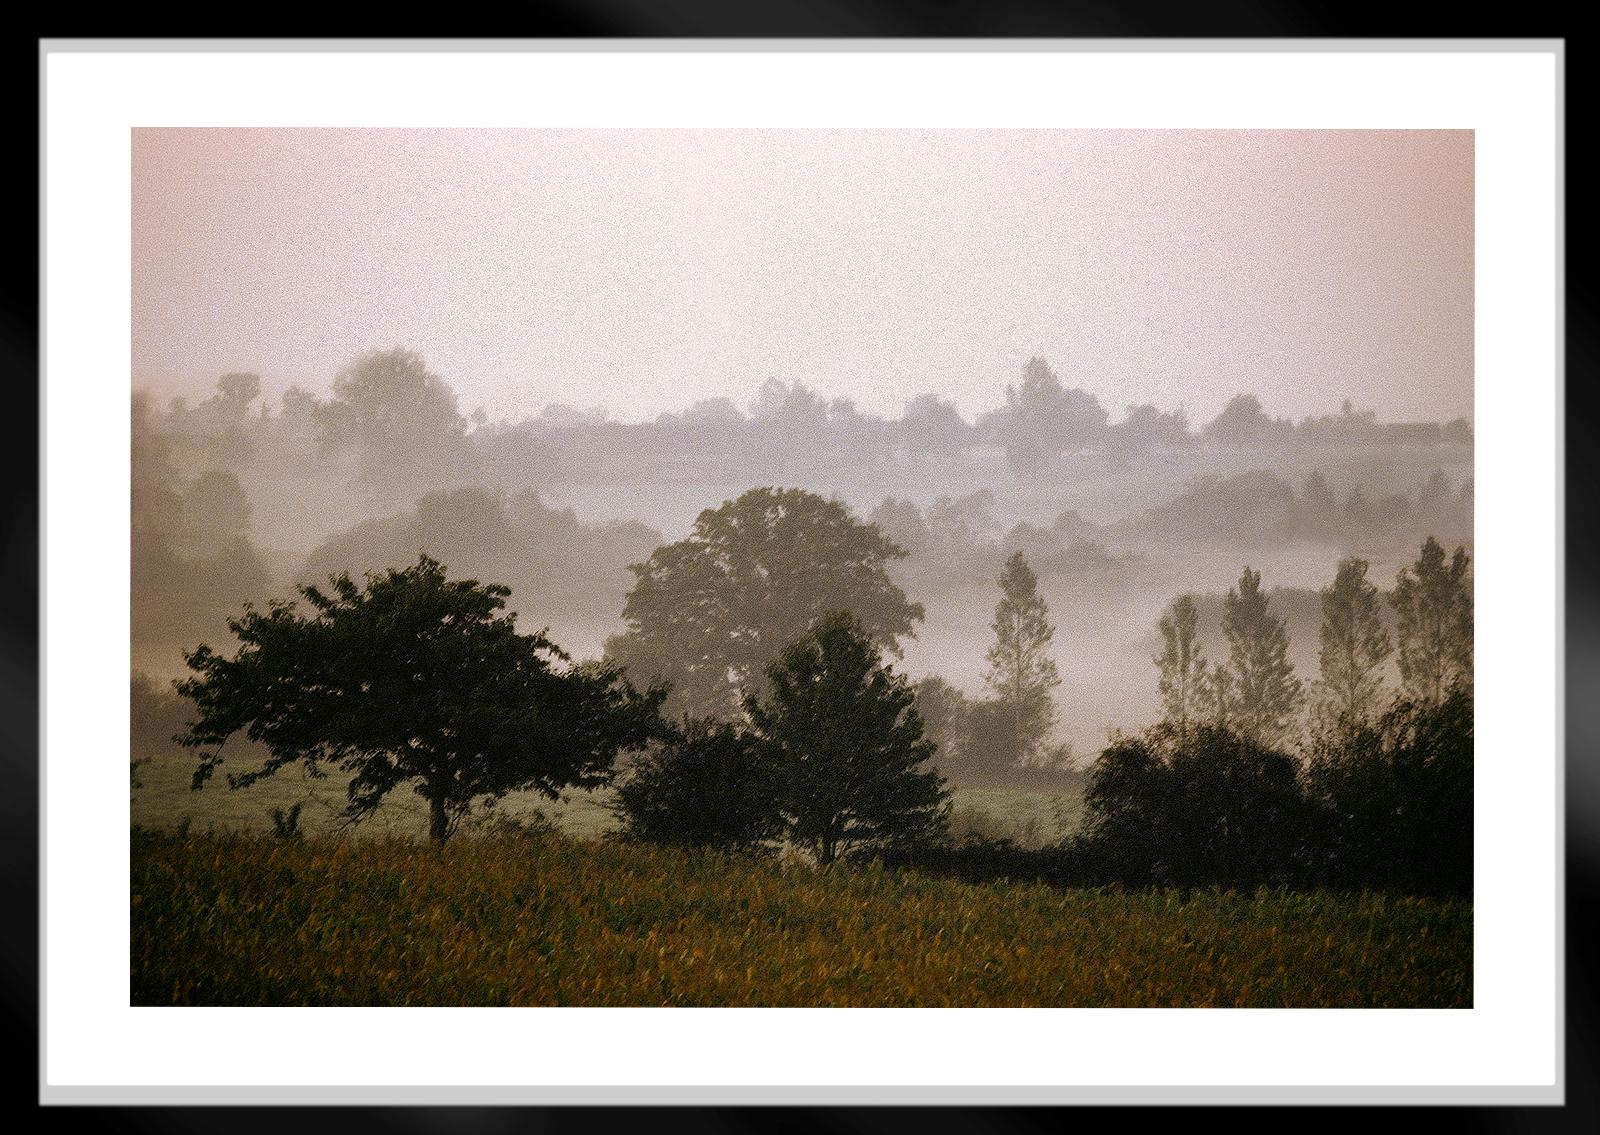 Mayenne – signierter Landschaftsdruck in limitierter Auflage, zeitgenössisch, Frankreich (Beige), Color Photograph, von Ian Sanderson